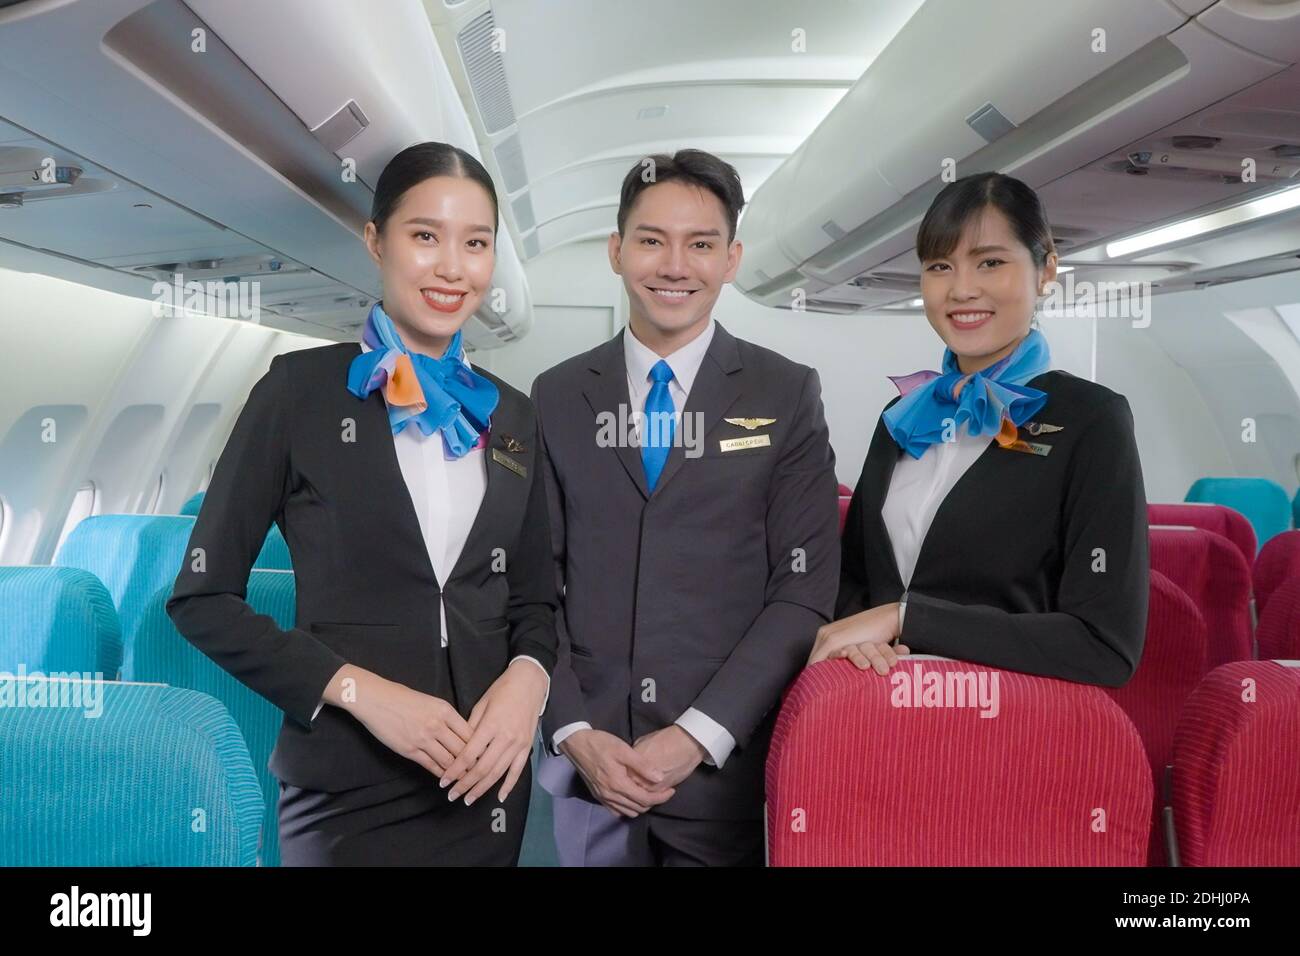 Retrato de tres hombres y mujeres en traje azul asistente de vuelo / azafata  de aire en clase económica cabina sonriendo para dar la bienvenida al  pasajero en el avión Fotografía de